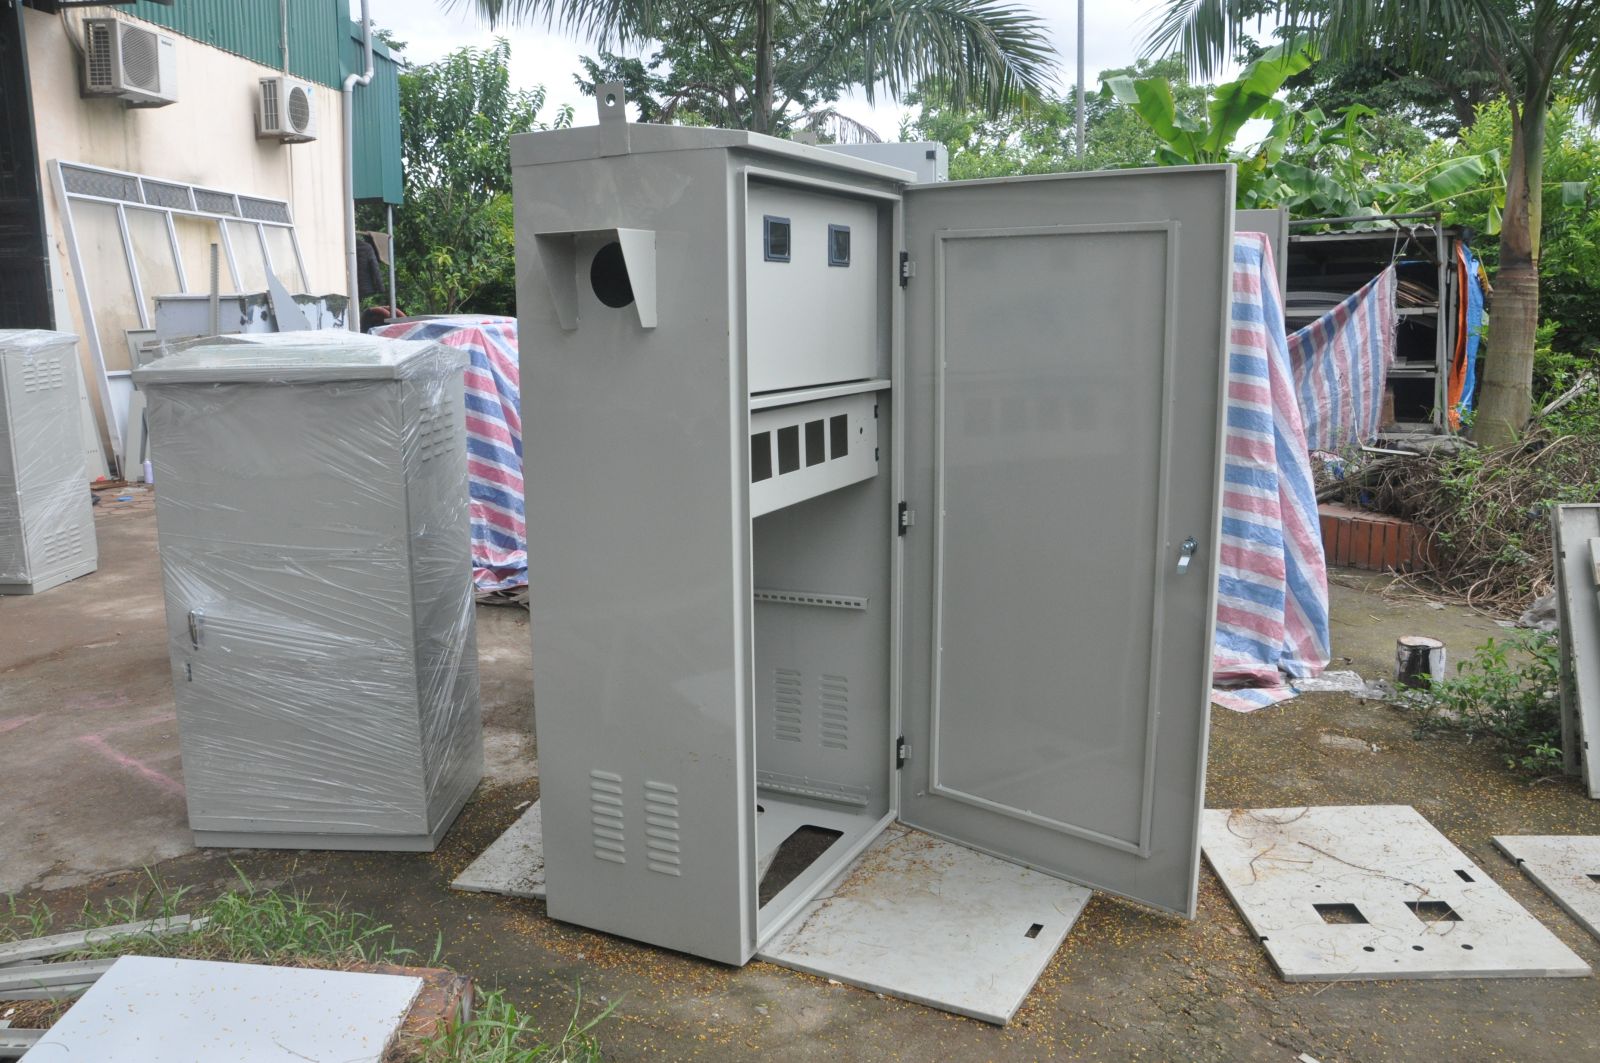 Tủ điện ngoài trời có độ bền bỉ hơn so với những loại tủ điện dân dụng trong nhà